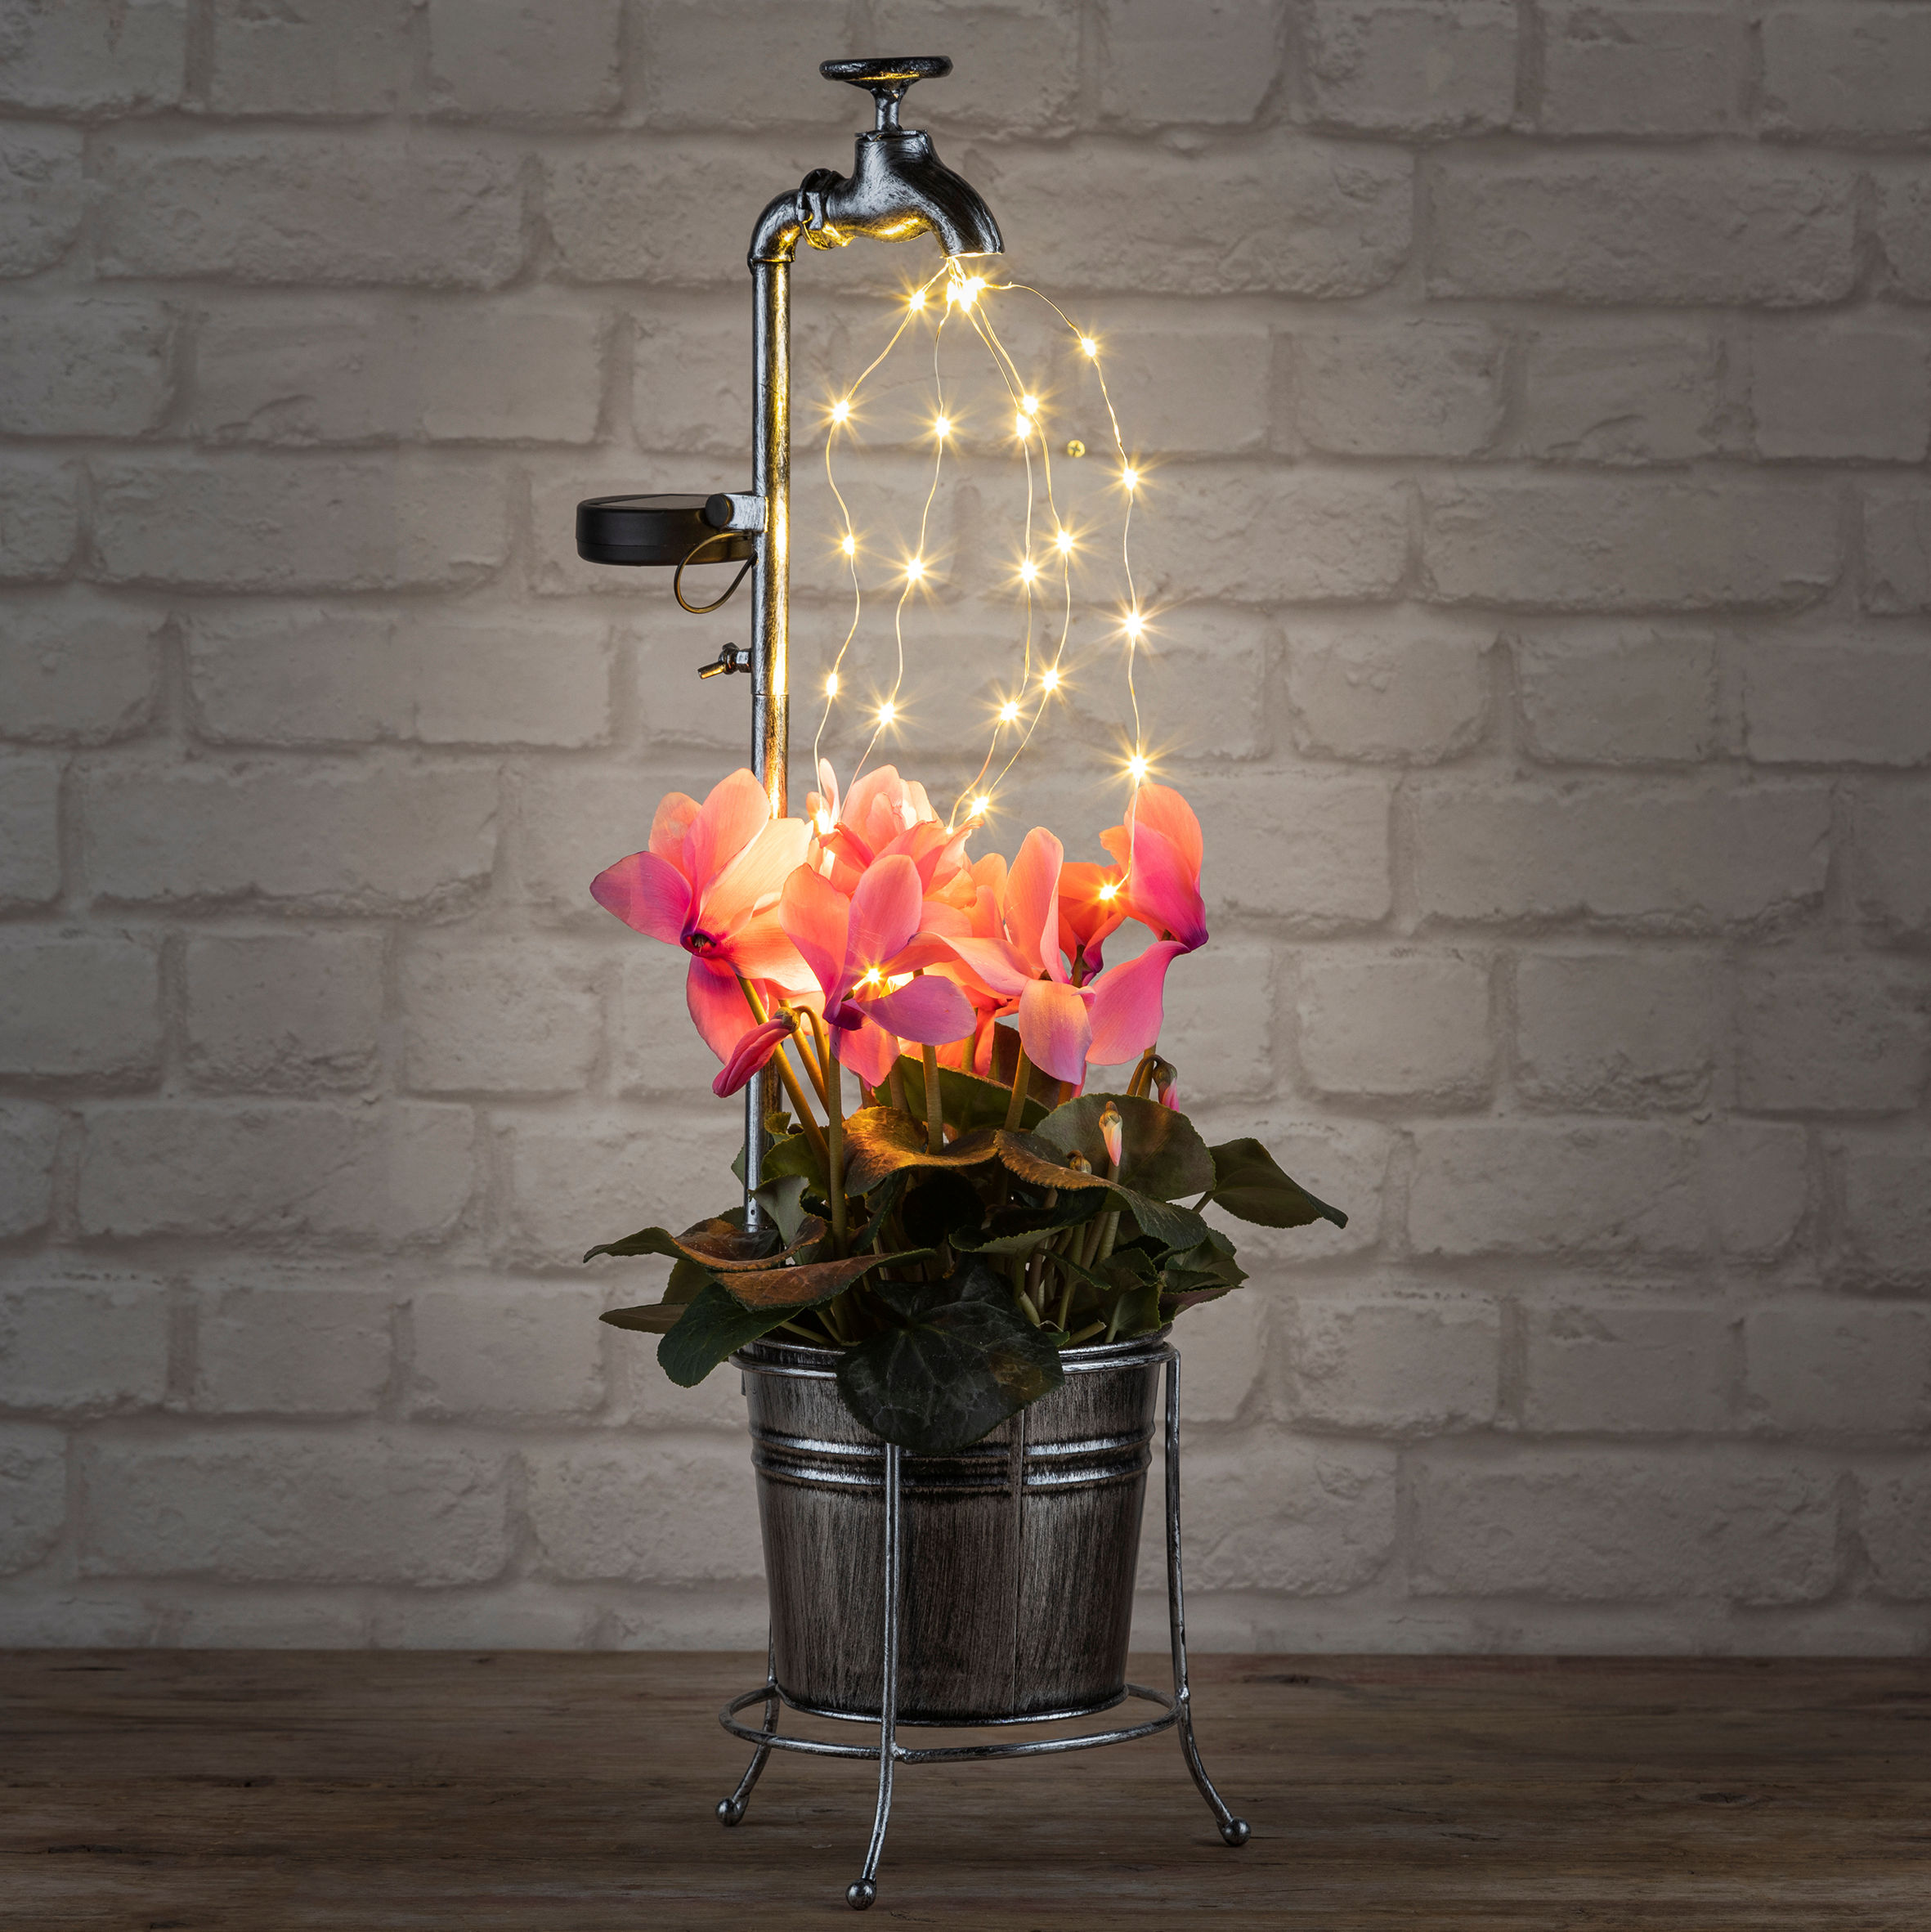 LED Solar Deko Wasserhahn mit Blumentopf - 60 x 17 cm - Garten Beleuchtung mit 30 LED in warm weiß - inklusive Pflanztopf mit Halter